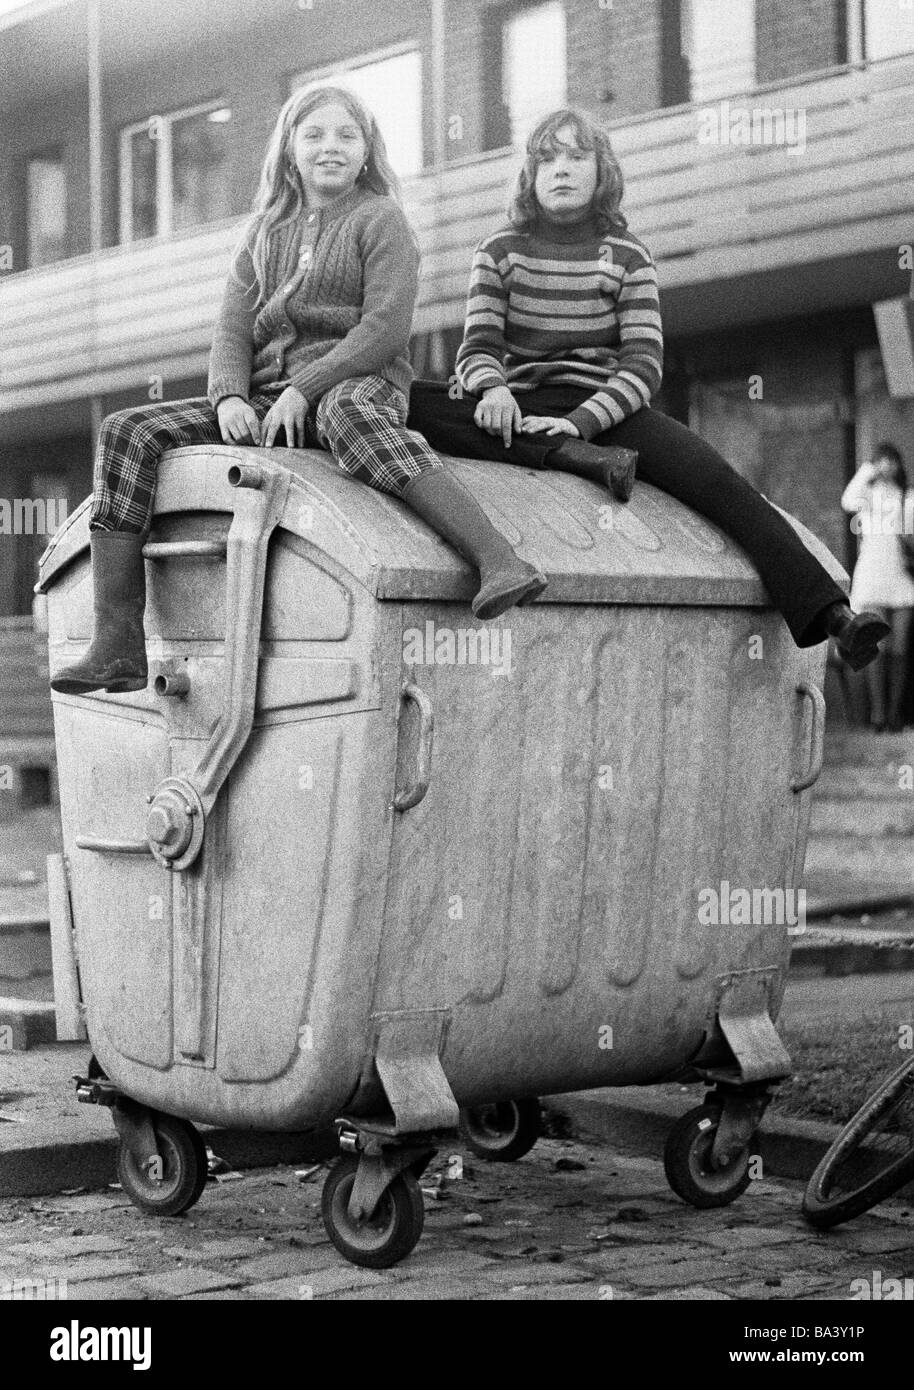 Negli anni settanta, foto in bianco e nero, persone, bambini, due ragazze seduti su un contenitore di rifiuti, bambini di strada, di età compresa tra i 10 e i 13 anni Foto Stock